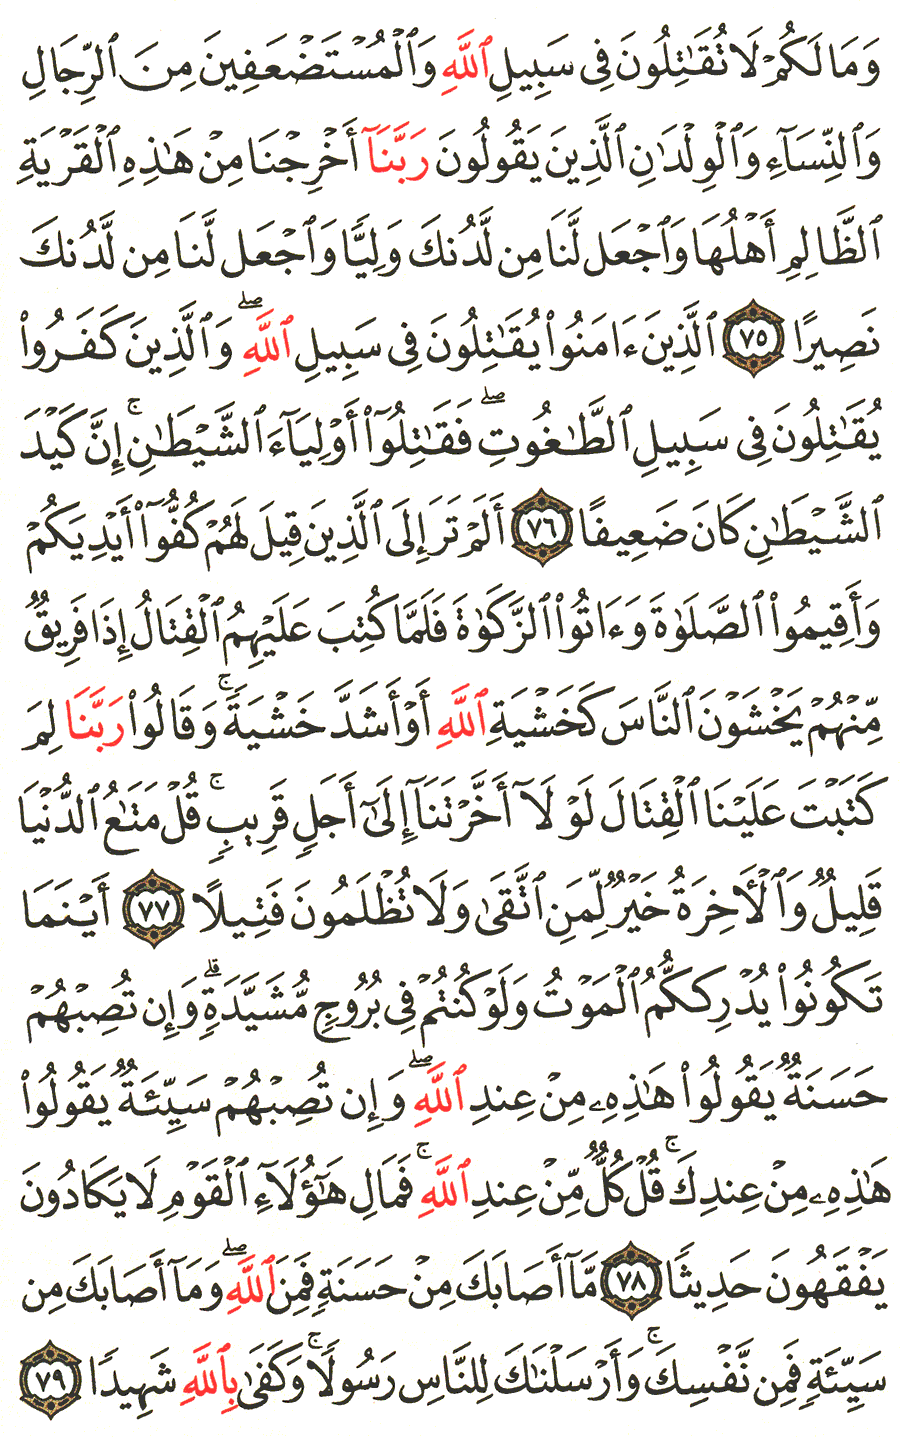 الصفحة رقم 90 من القرآن الكريم مكتوبة من المصحف